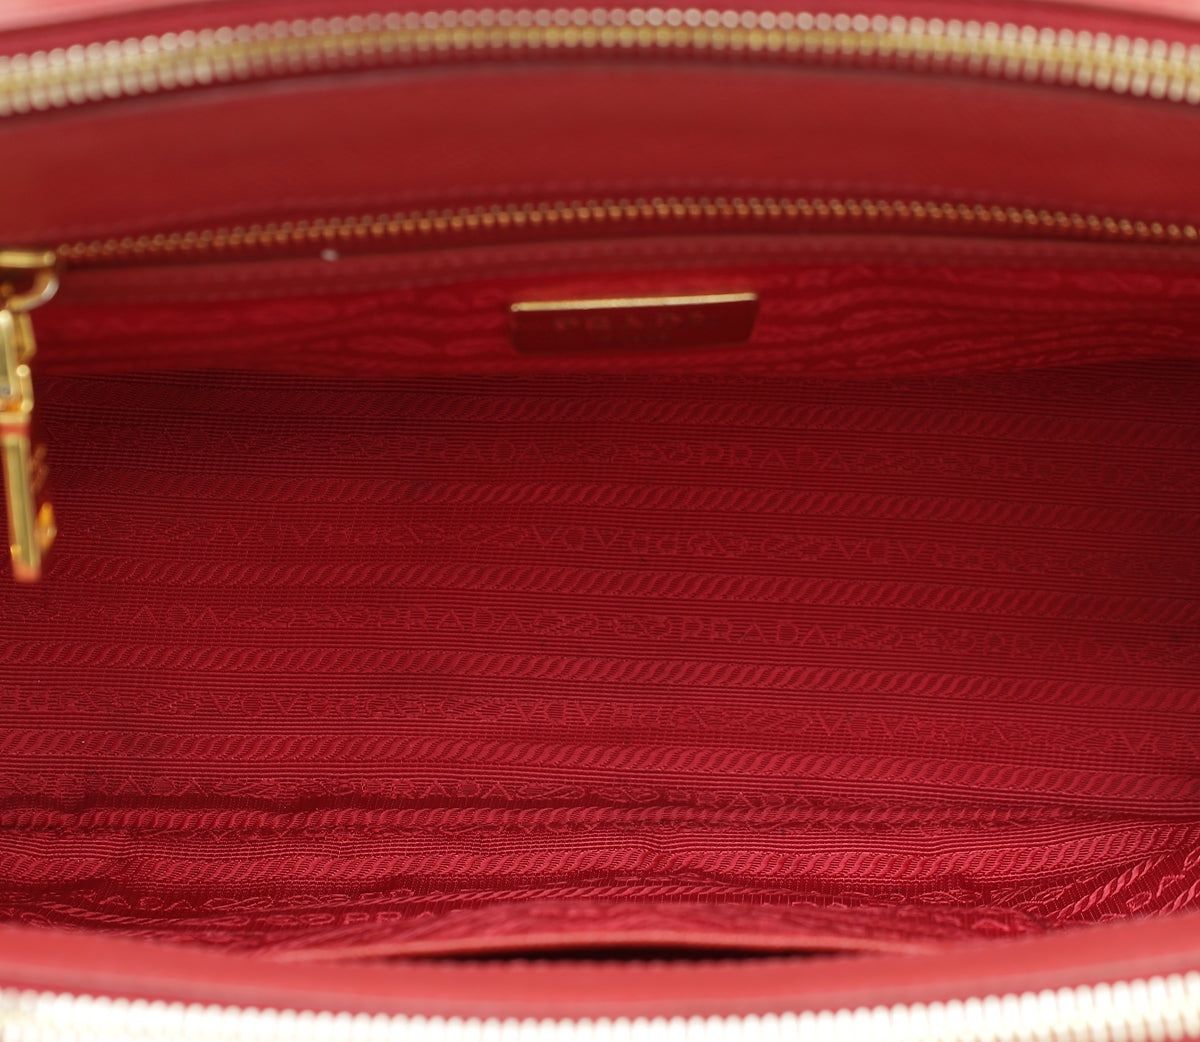 Prada Red Galleria Tote Bag